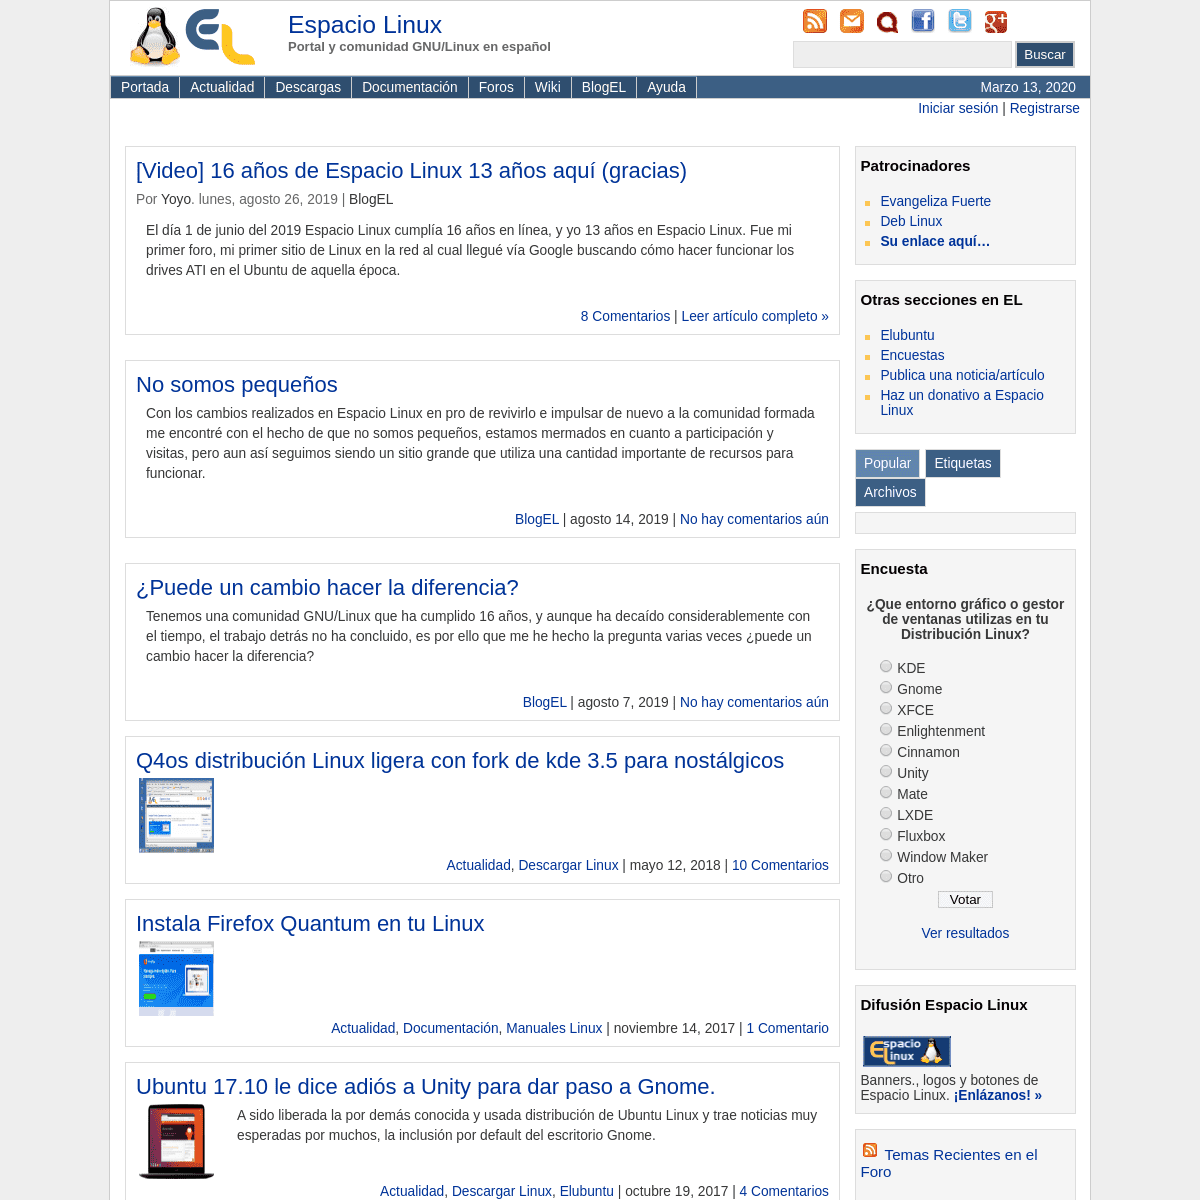 A complete backup of espaciolinux.com